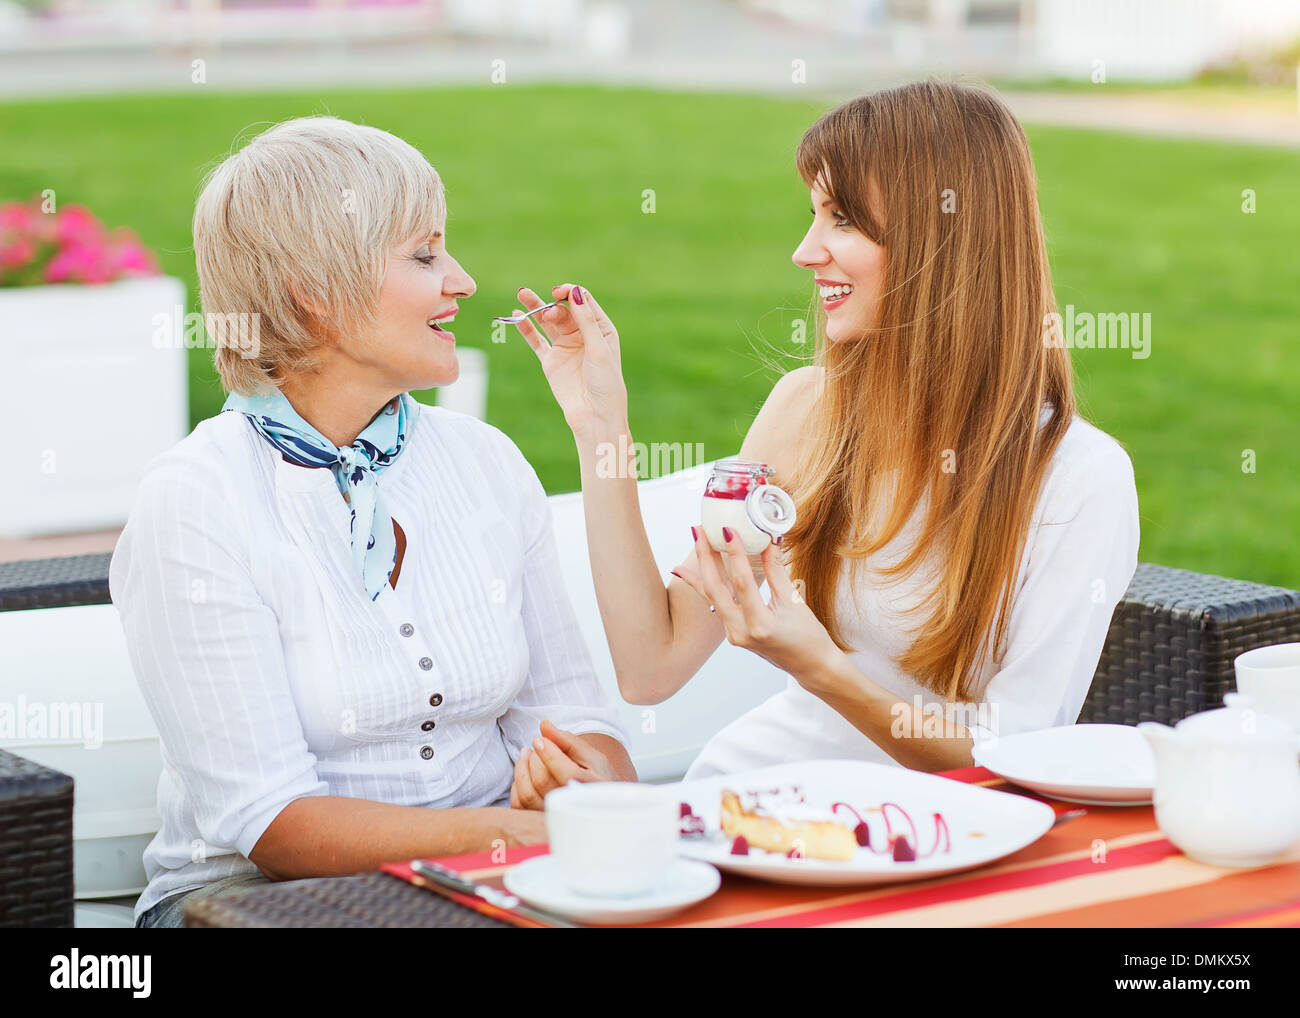 Les cadres supérieurs et les jeunes fille séduisante mère manger un gâteau, de boire du café au coffee shop, smiling Banque D'Images